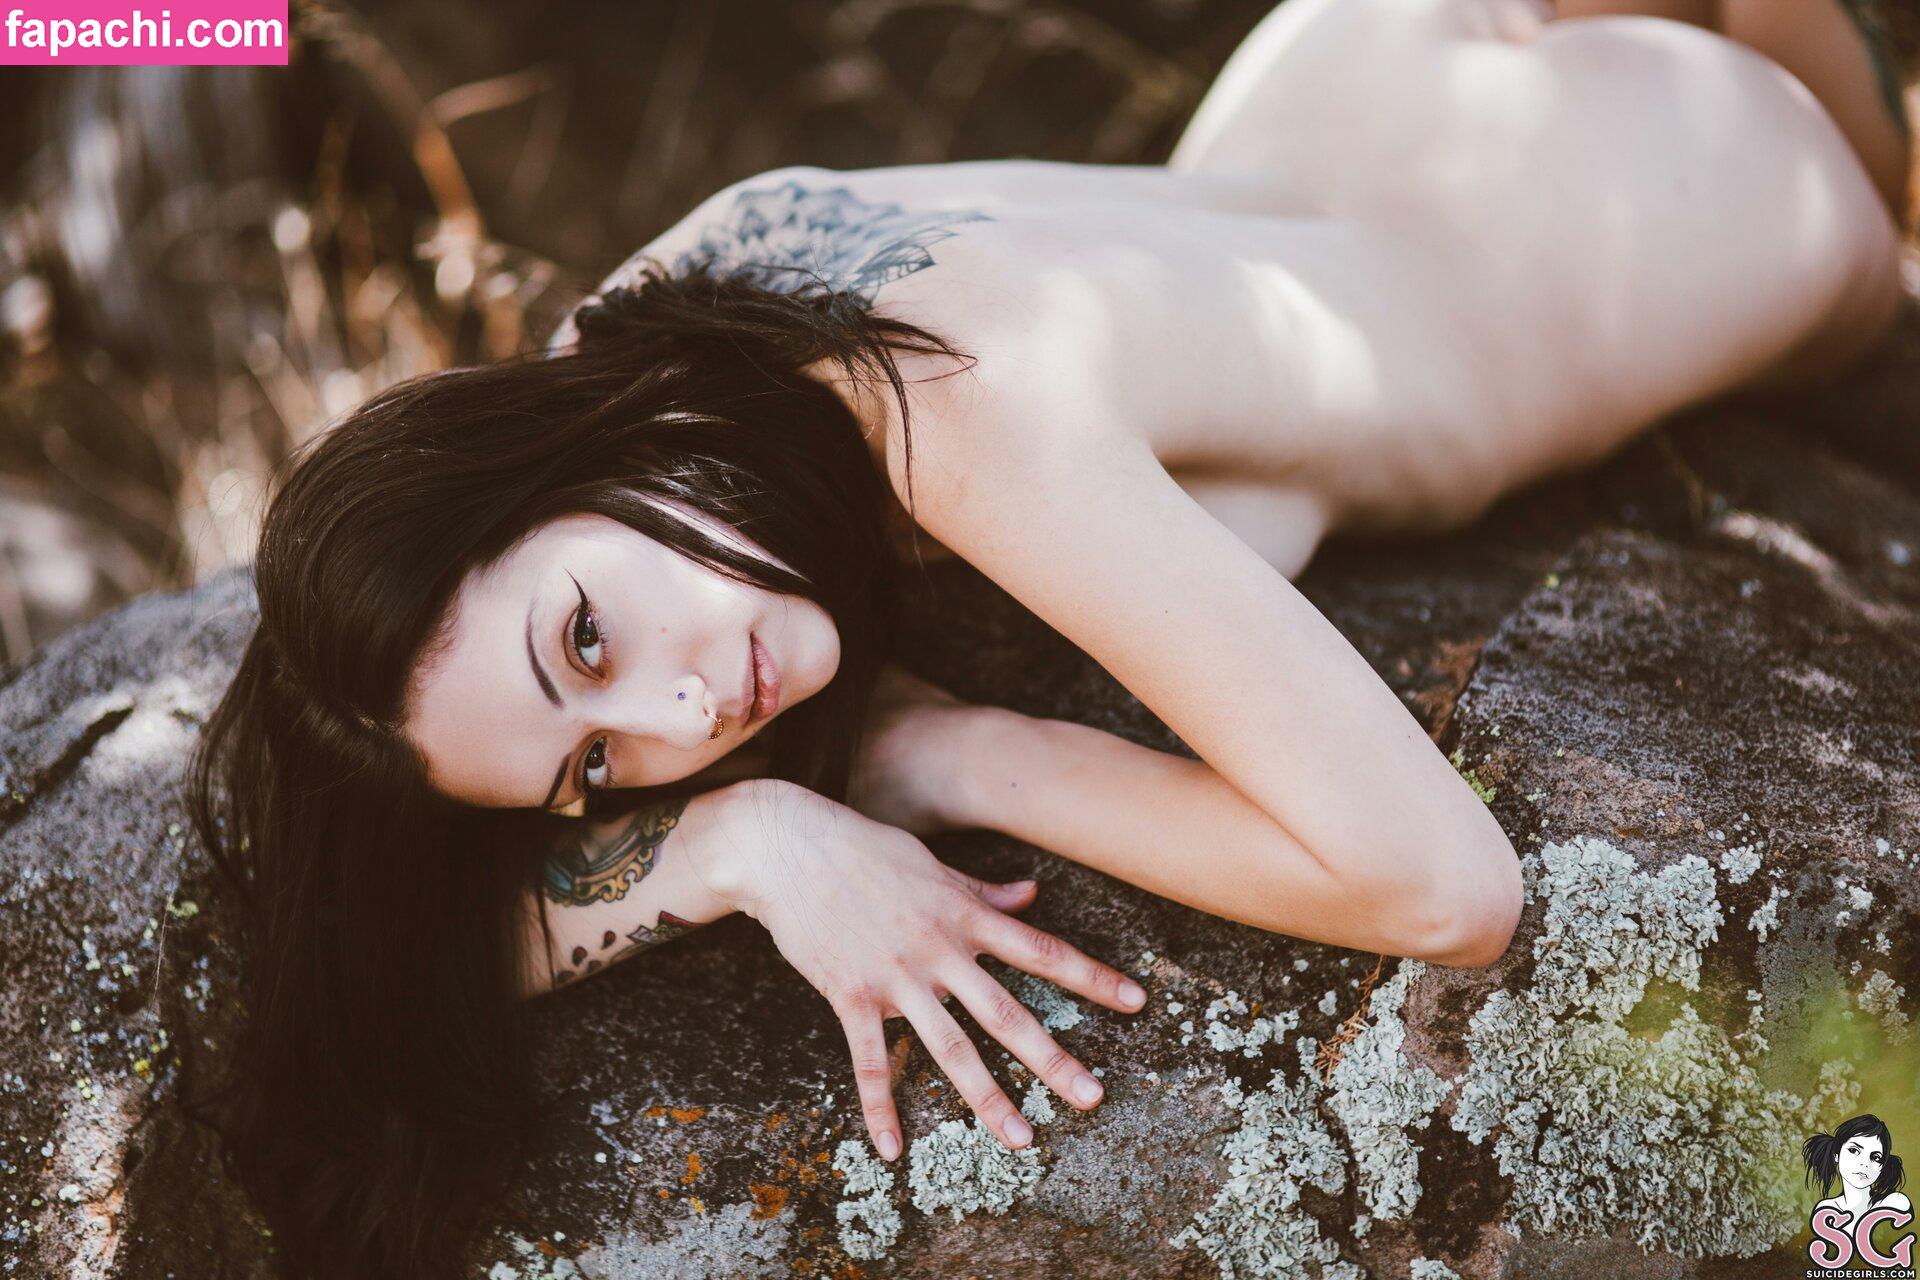 Feryn Suicide / ferynandwolfe / ferynsuicide leaked nude photo #0408 from OnlyFans/Patreon